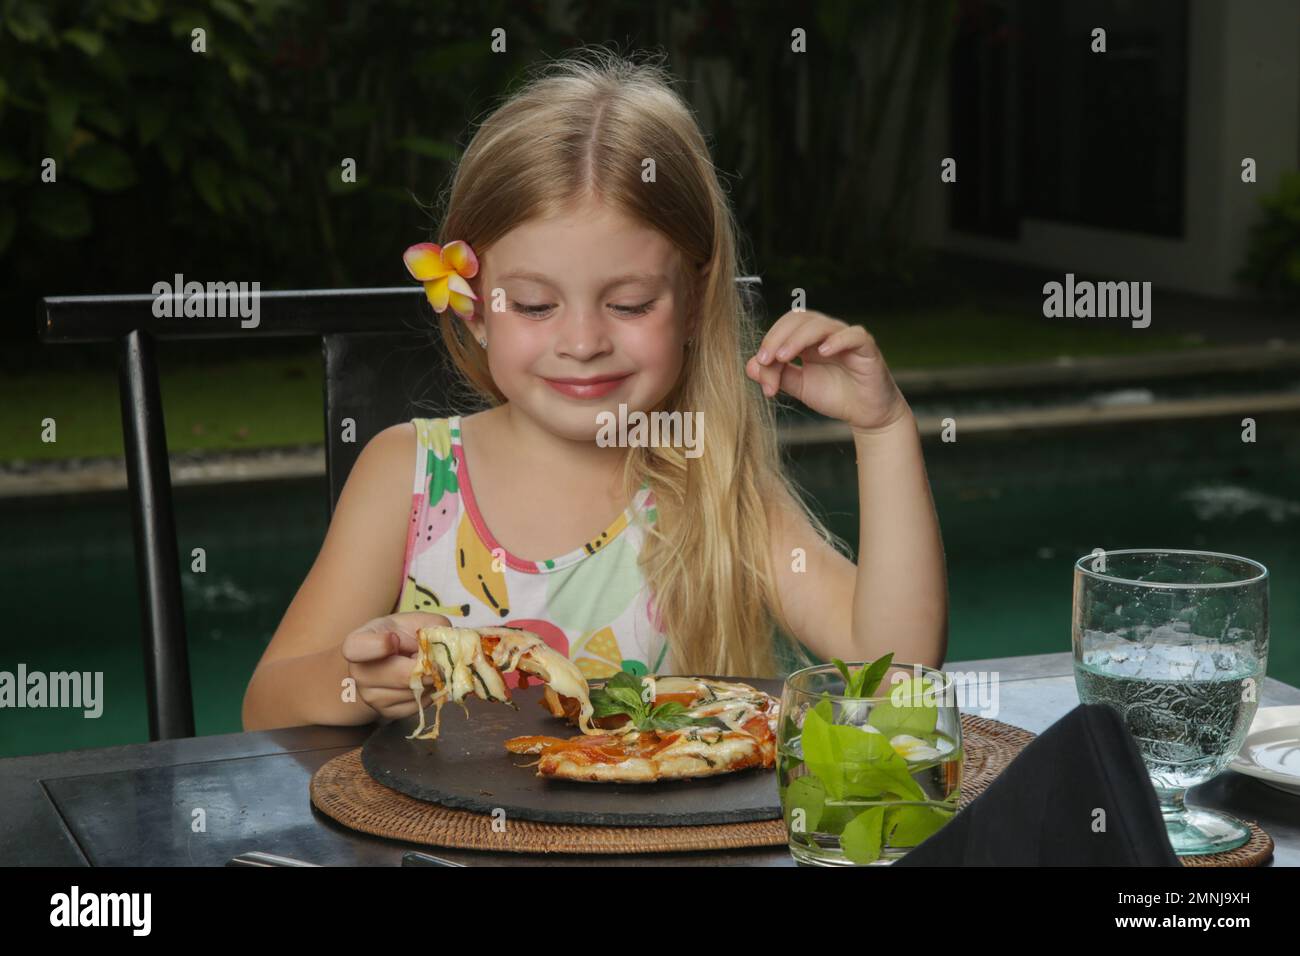 Little girl eating pizza Margherita at the restaurant Stock Photo